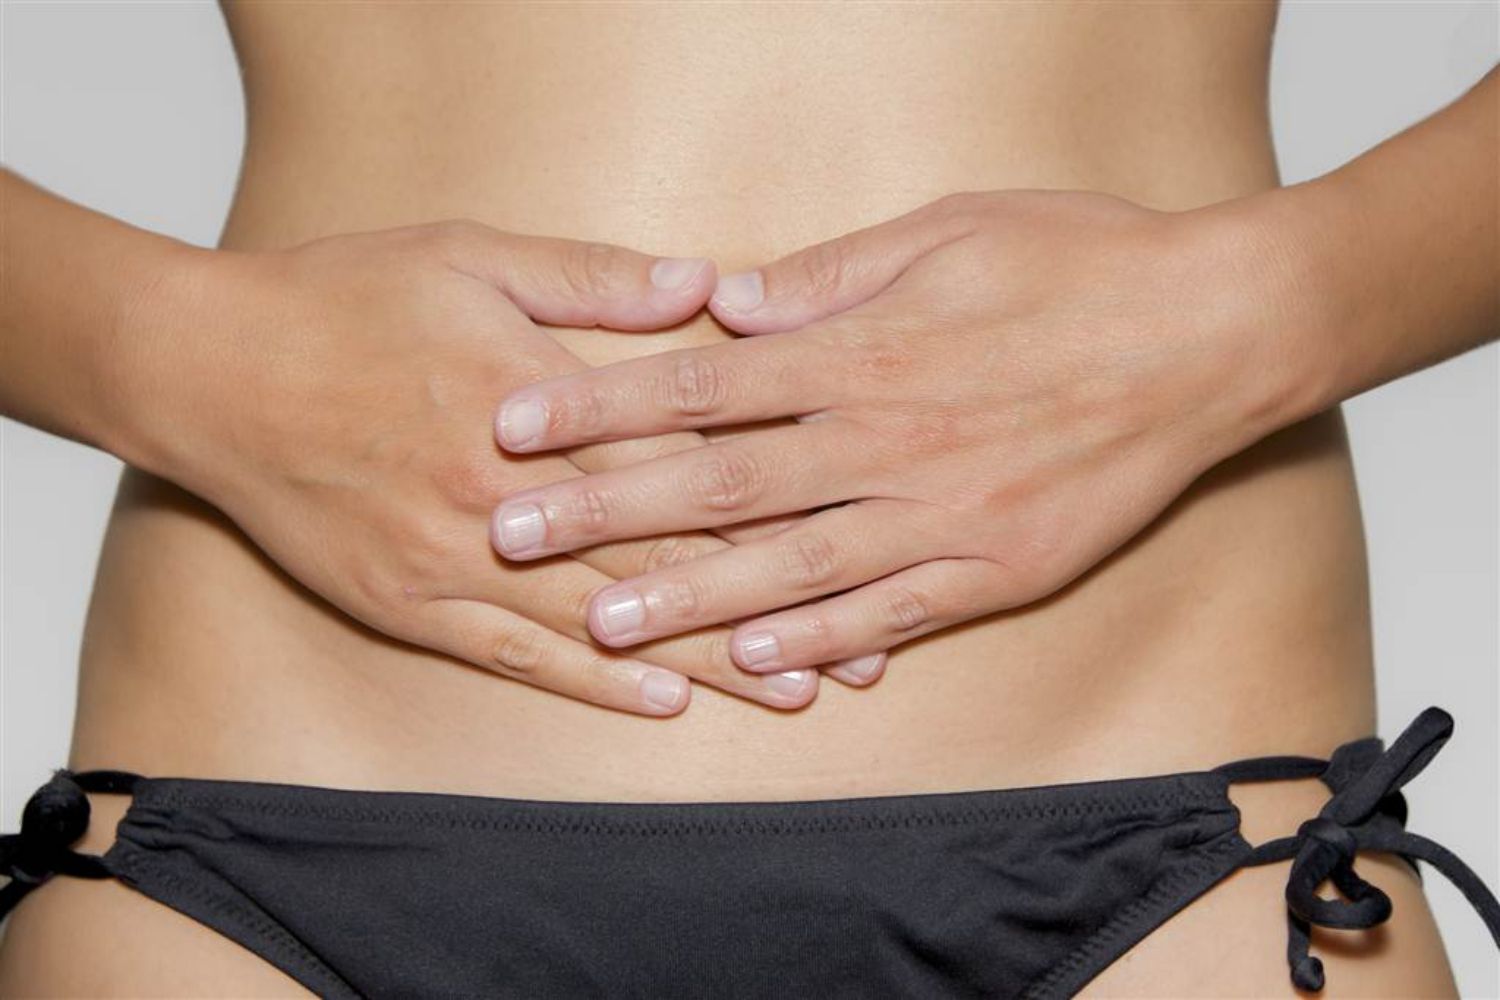 Làm thế nào để có được một quá trình hồi phục tạo hình thành bụng dễ dàng hơn